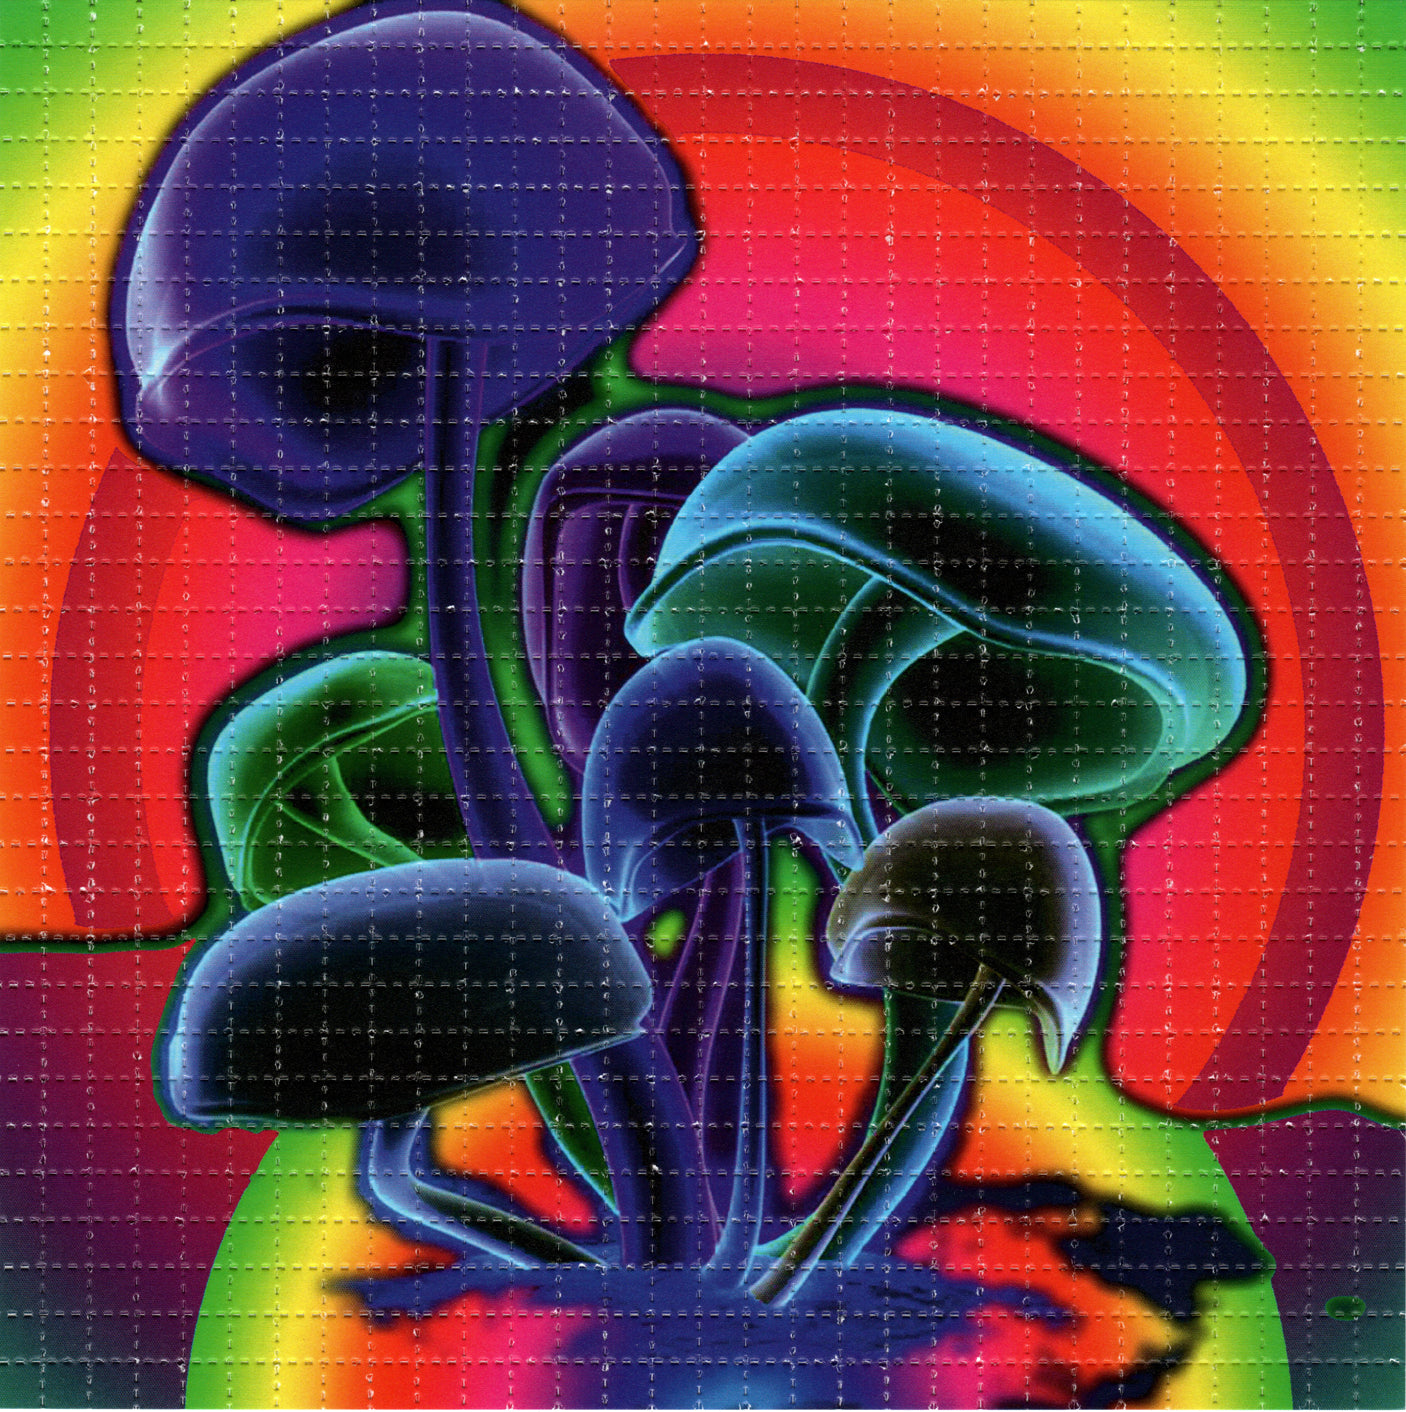 Neon Shrooms V2 LSD blotter art print